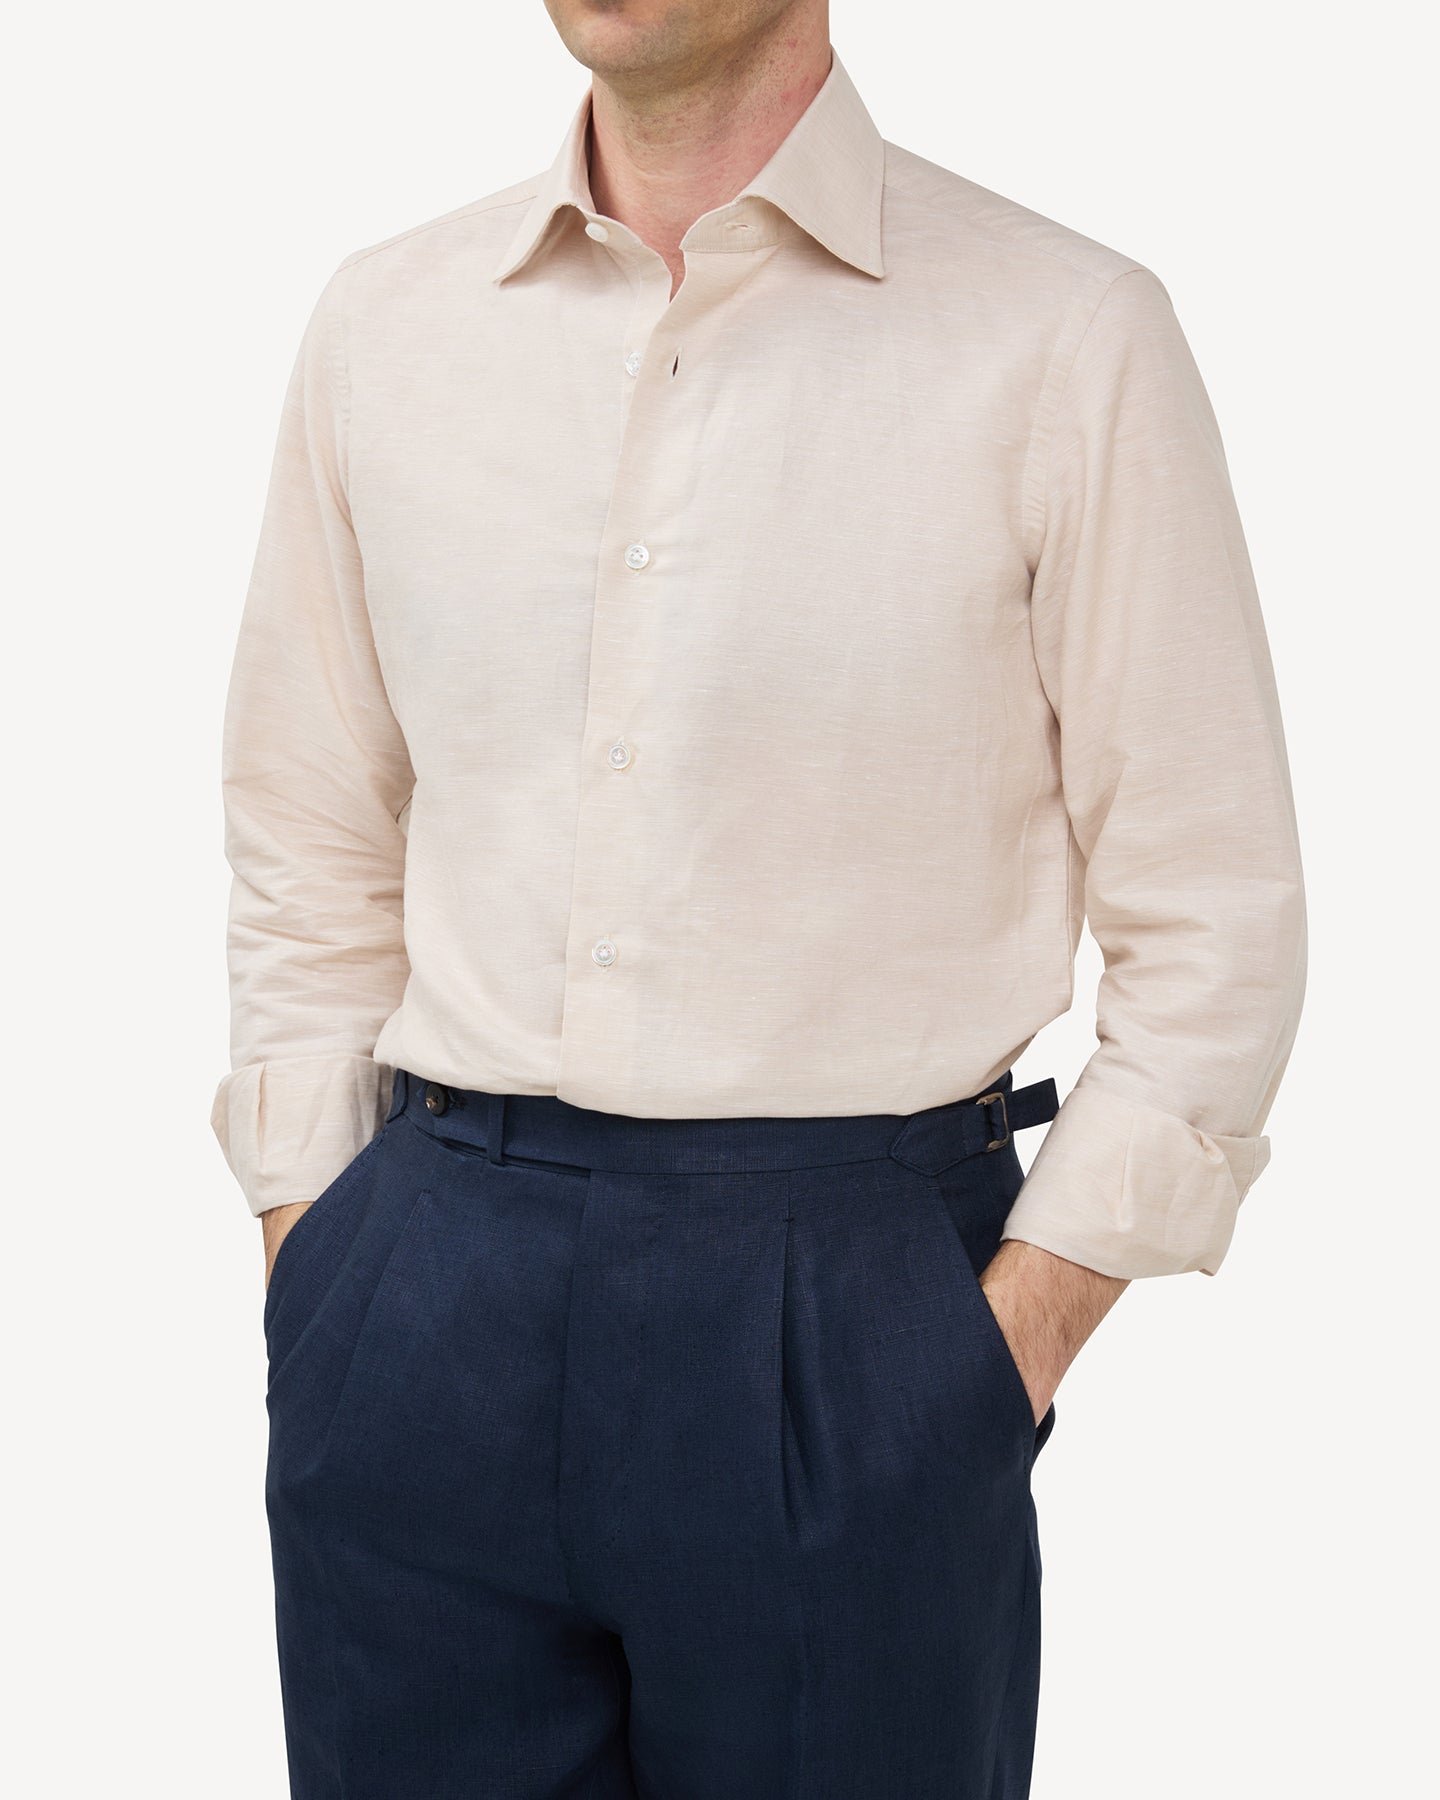 Man wearing a beige cotton linen dress shirt and navy linen trousers